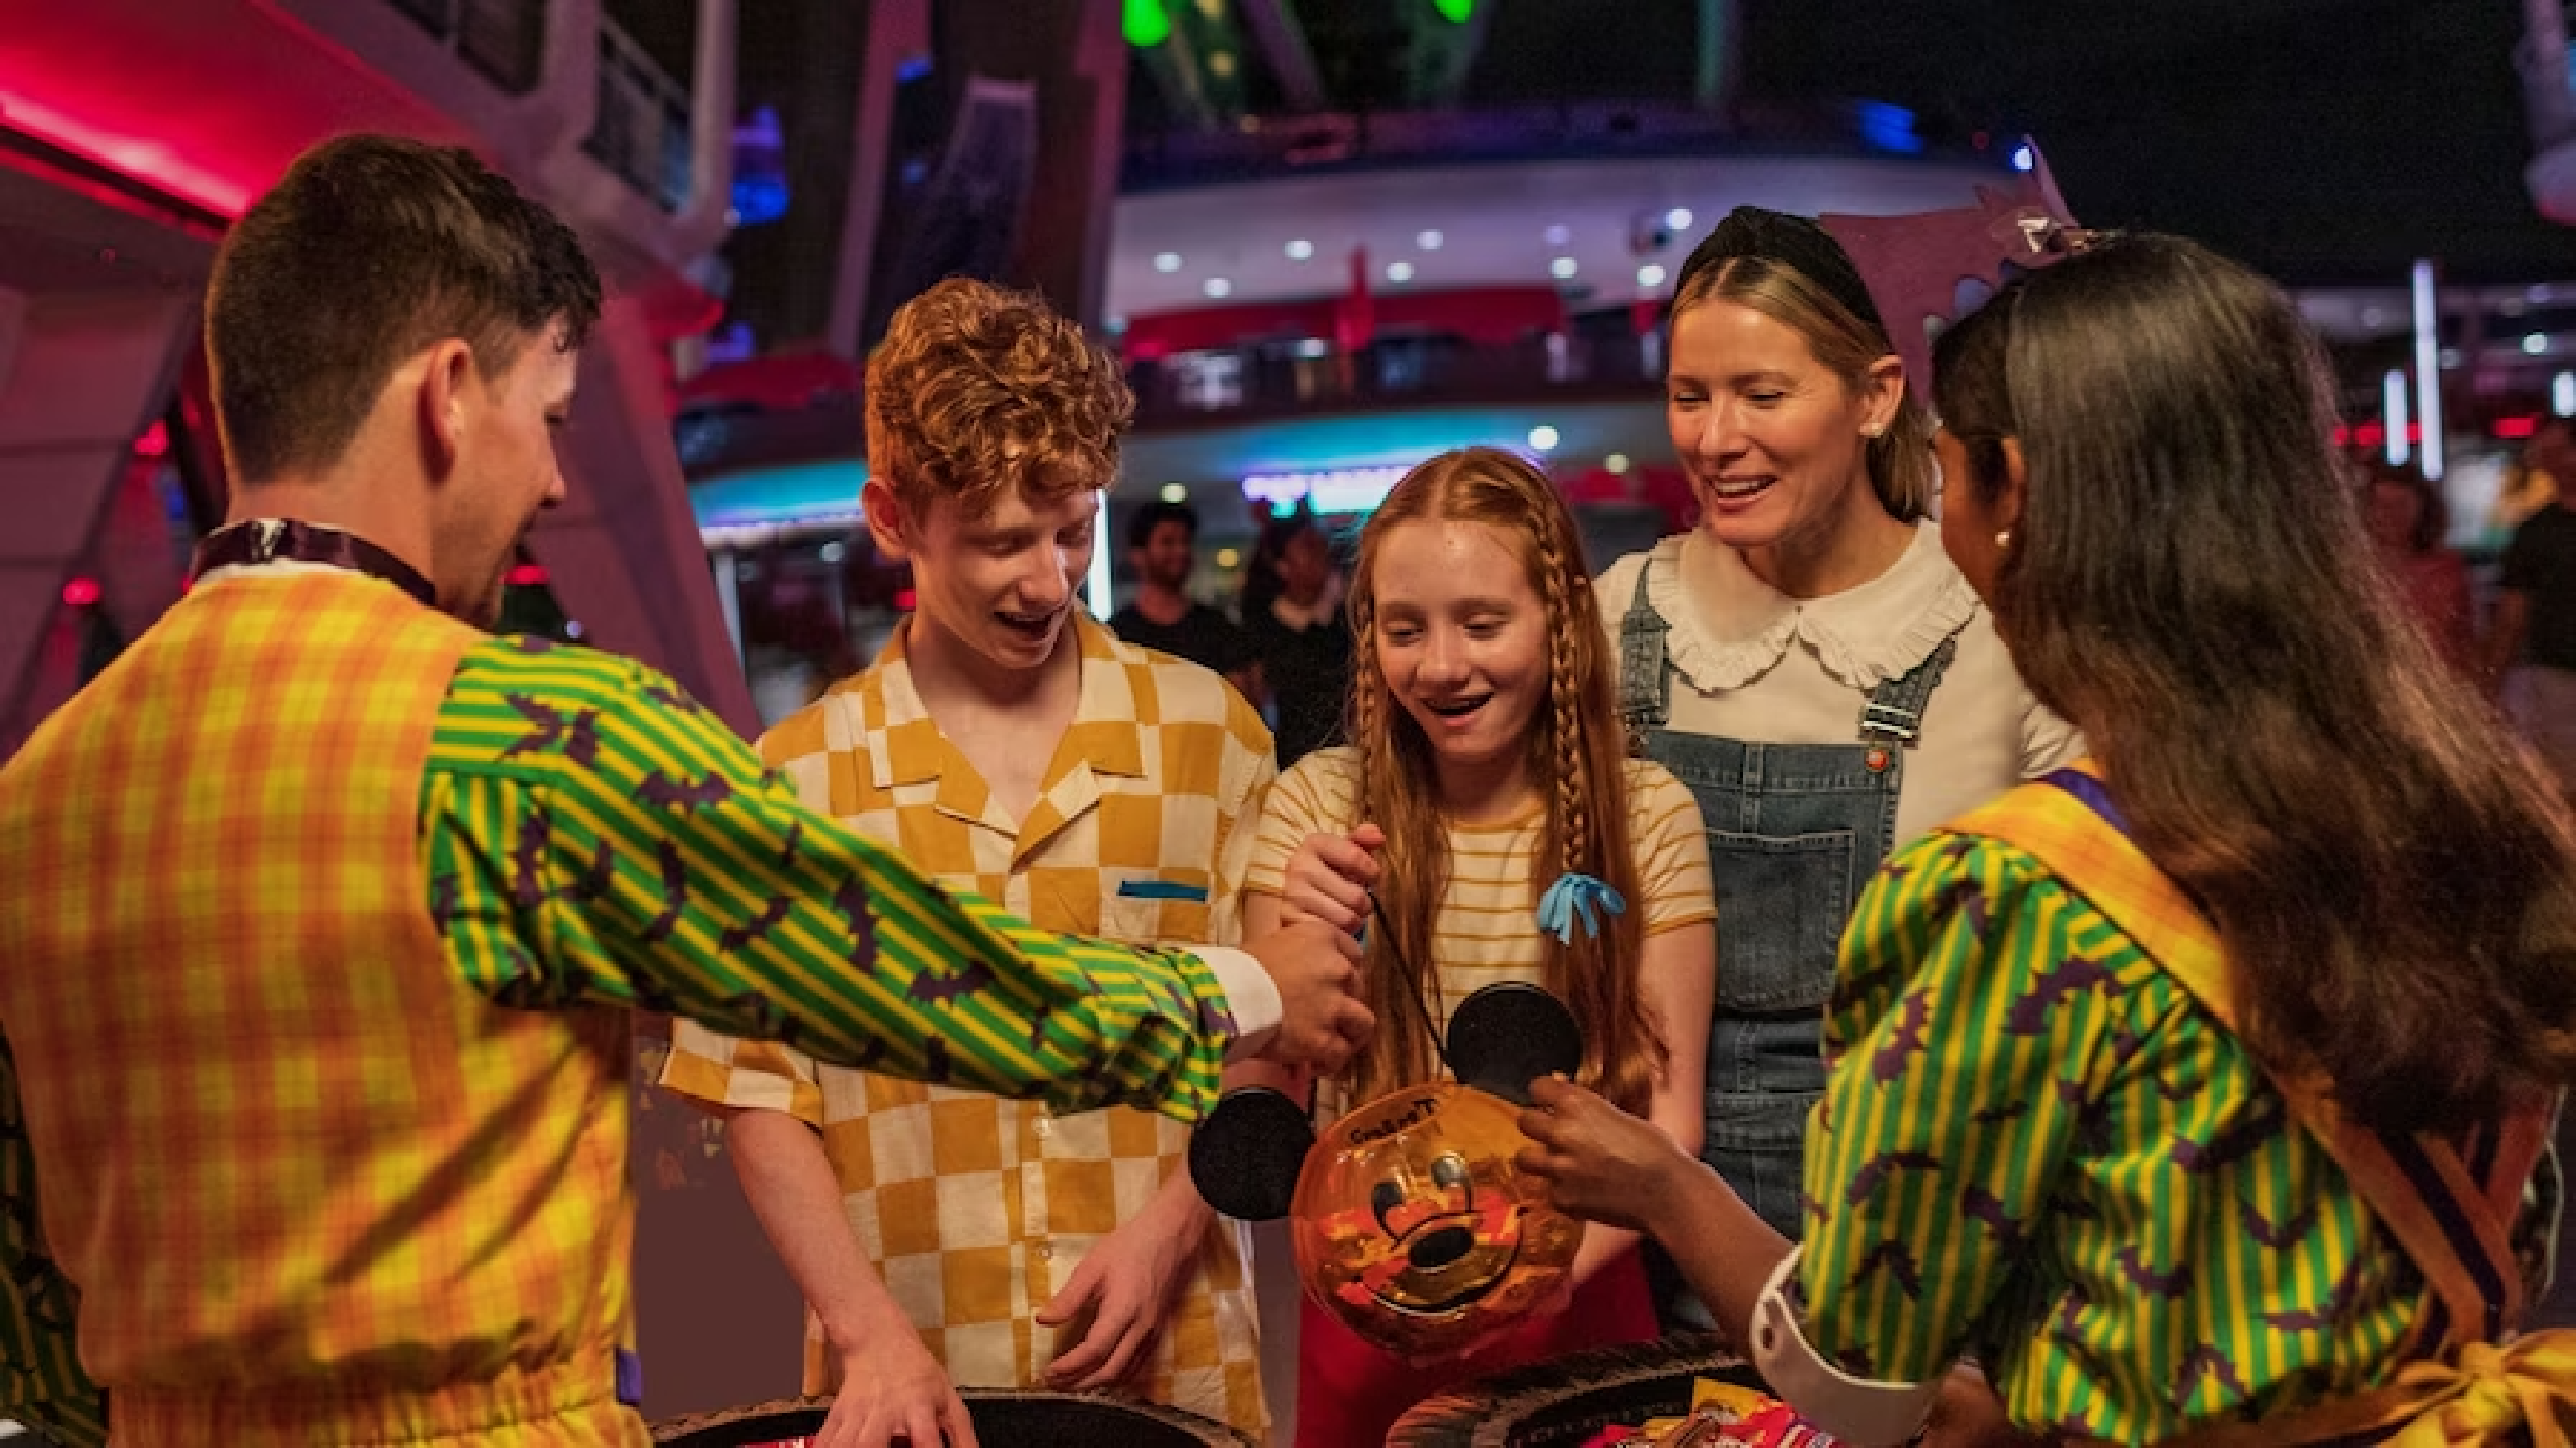 Festa de Halloween na Disney de Orlando, público participando do evento Doces ou Travessuras